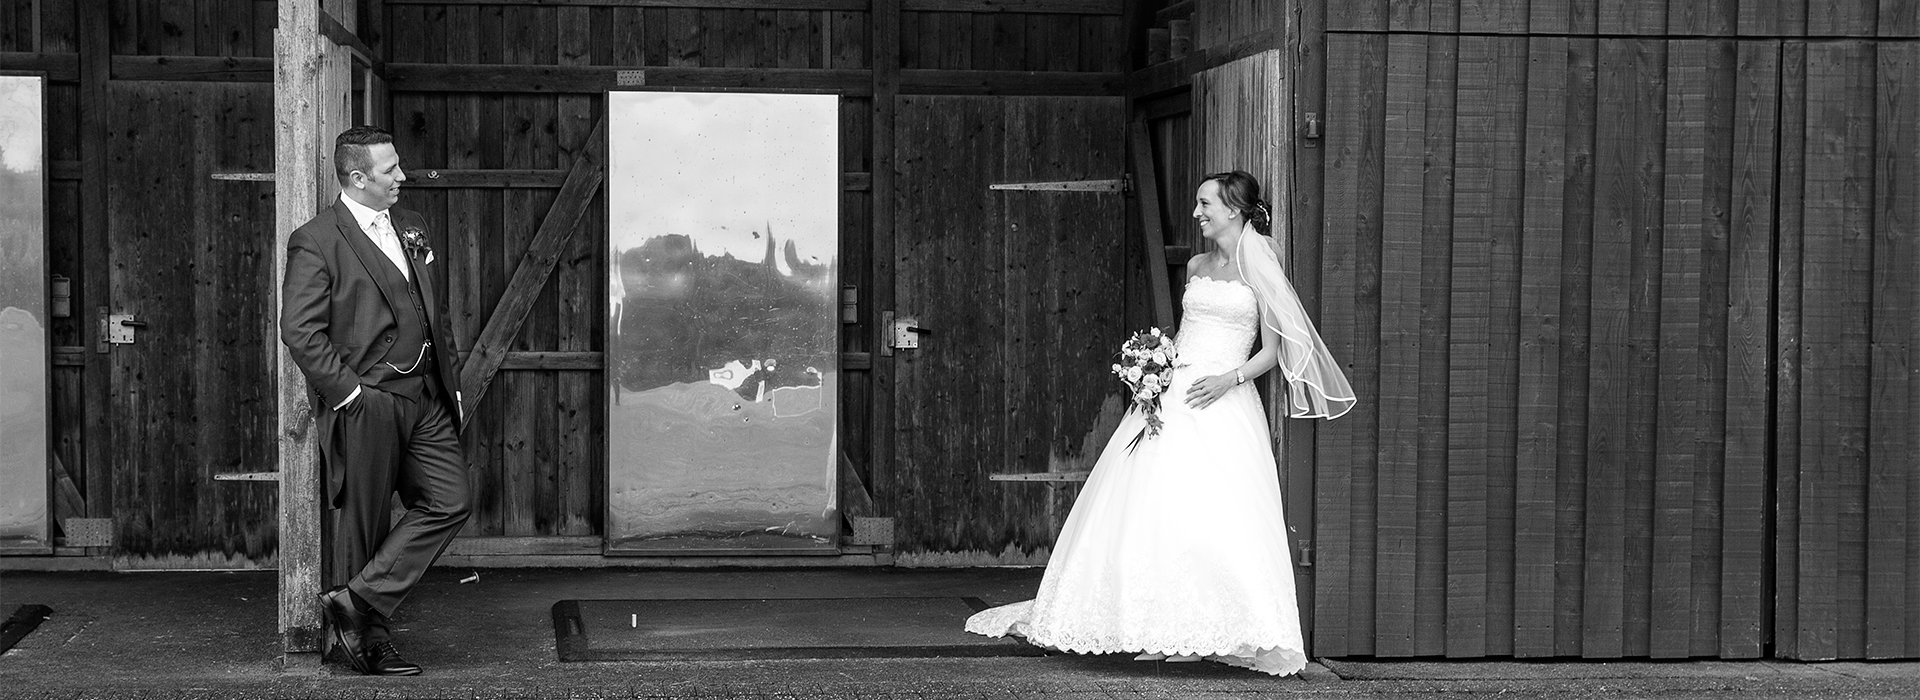 Hochzeitsfotografie von Ariane & Thorsten in Neviges, Mettmann und Ratingen